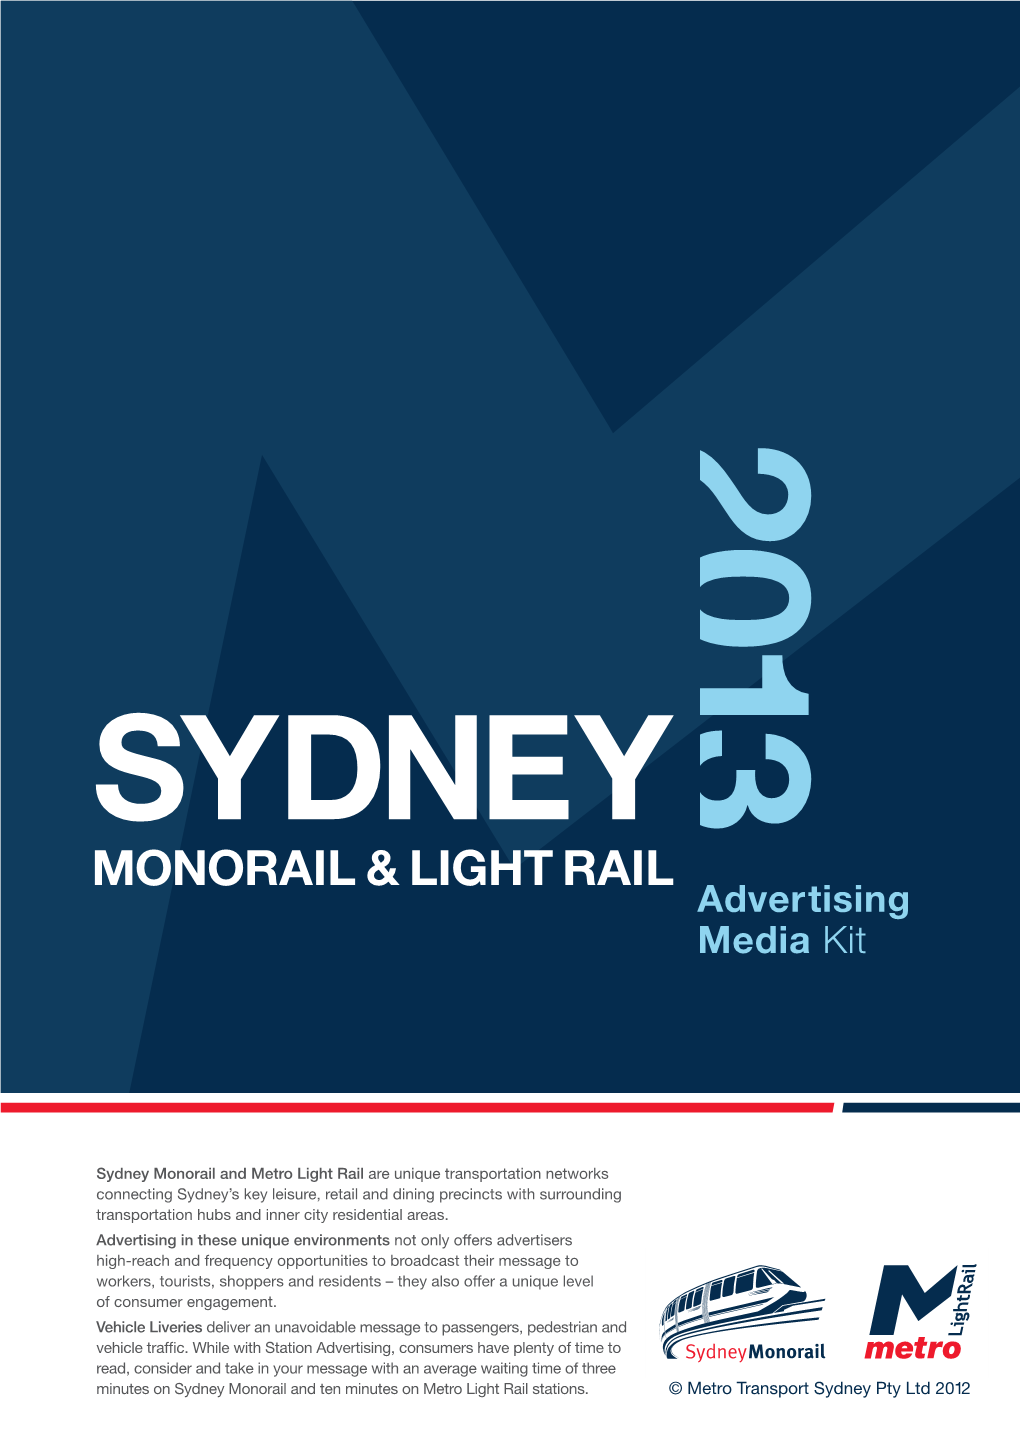 Monorail & Light Rail